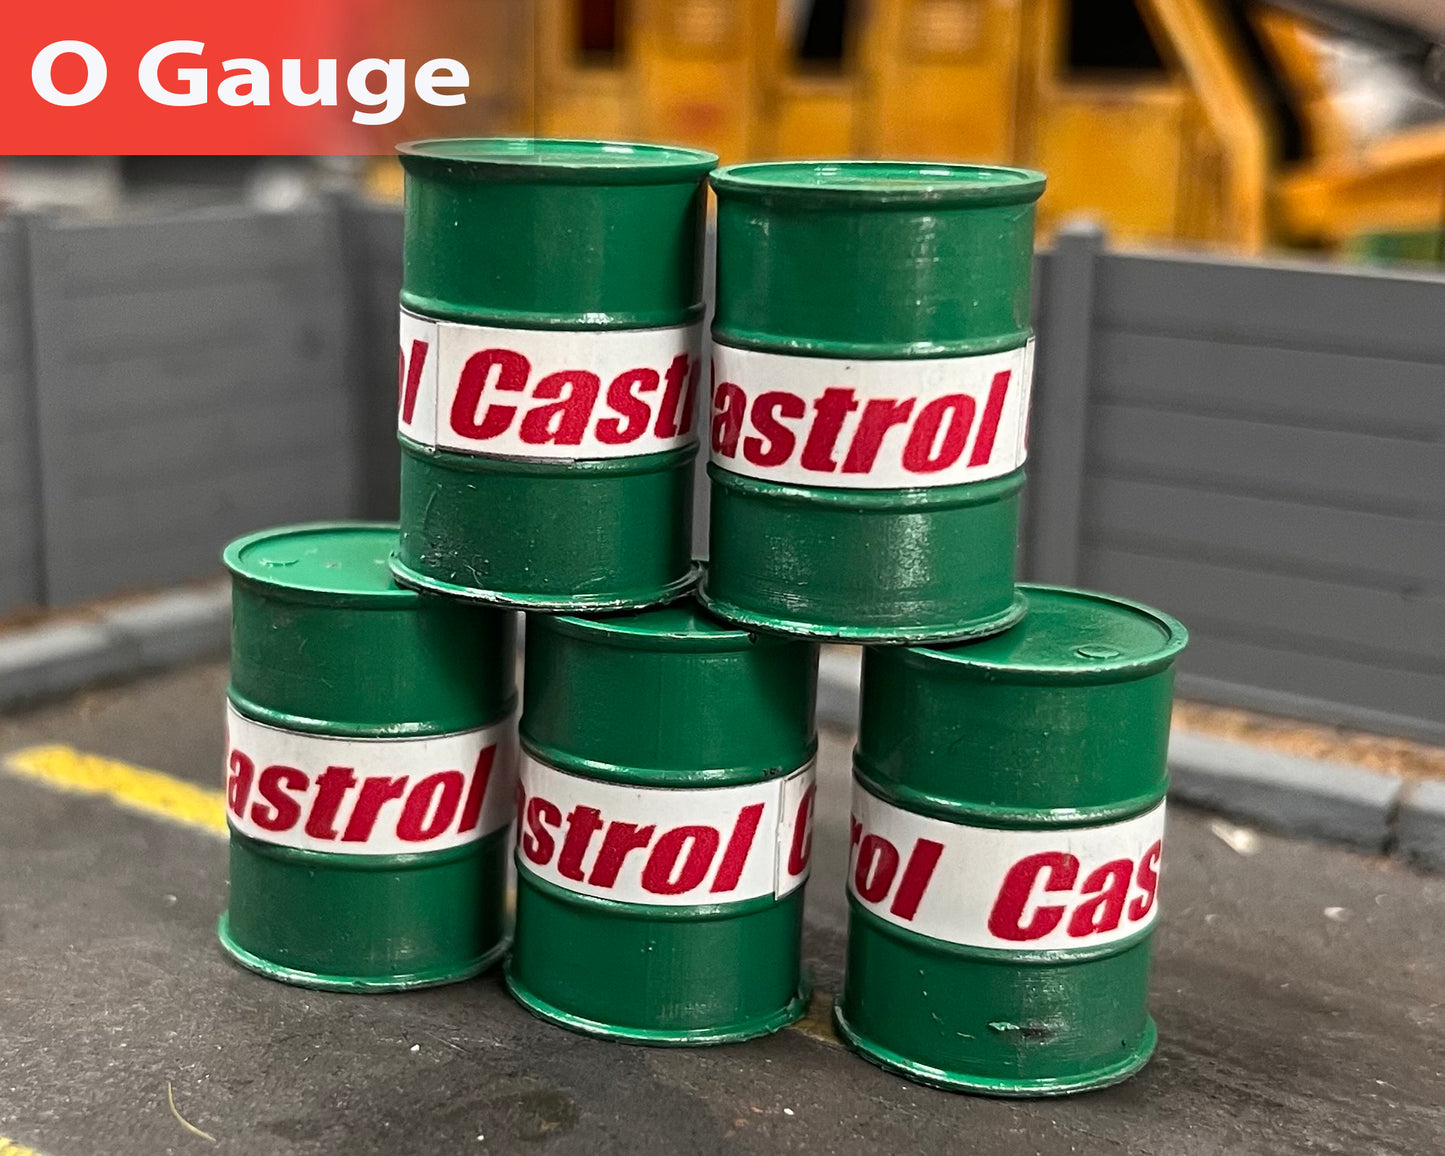 Castrol Oil Drums - Pristine - O Gauge